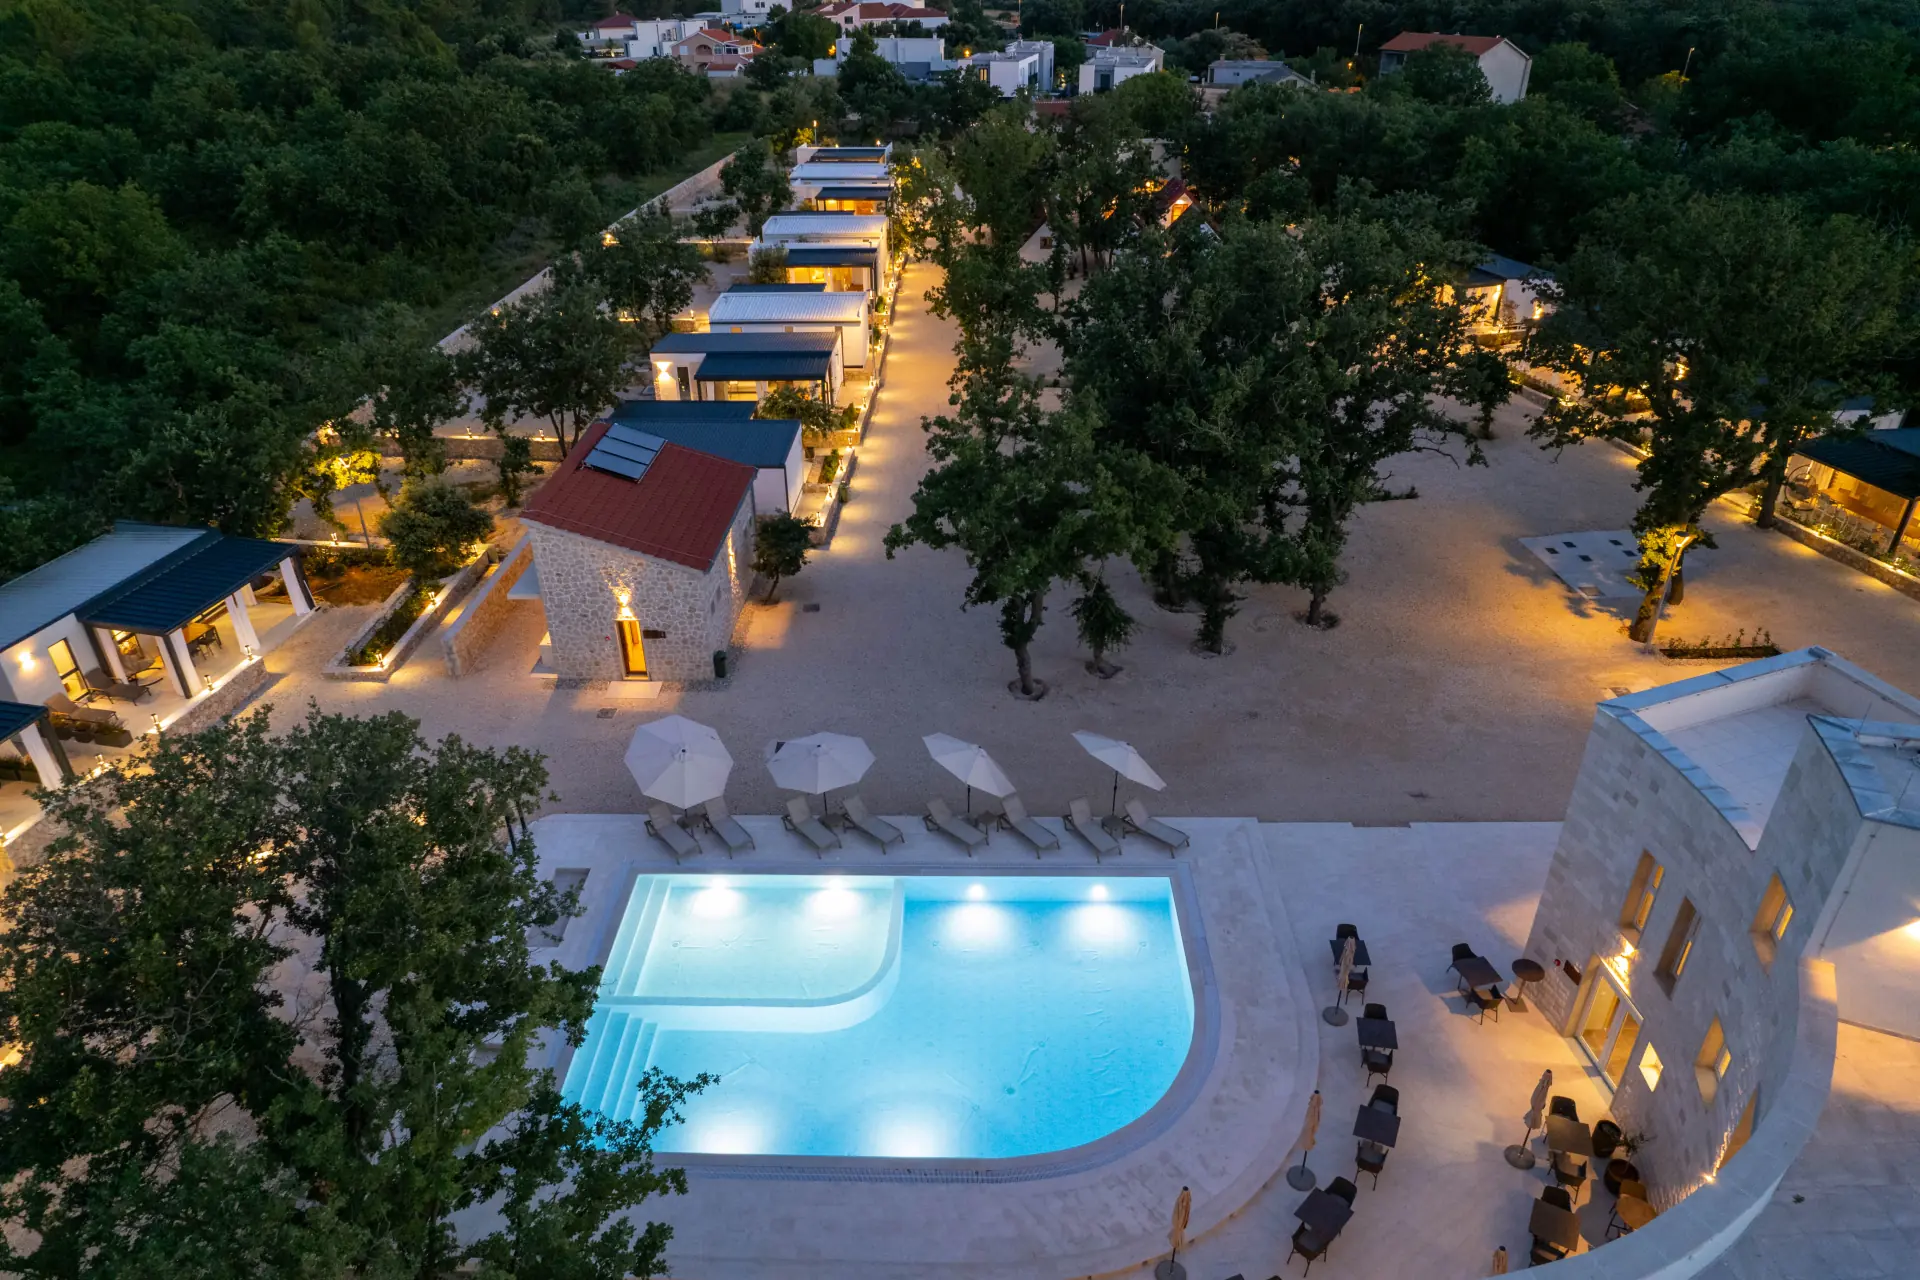 Ptičji pogled na bazen u kampu noću, okružen drvećem i zgradama. Bazen je čisto plave boje, a zgrade su većinom tamne. Drveće je zeleno, a neka od njih imaju upaljena svjetla. Ova slika je iz Kamp Dionis Zaton, kampa u Zatonu, Hrvatska.